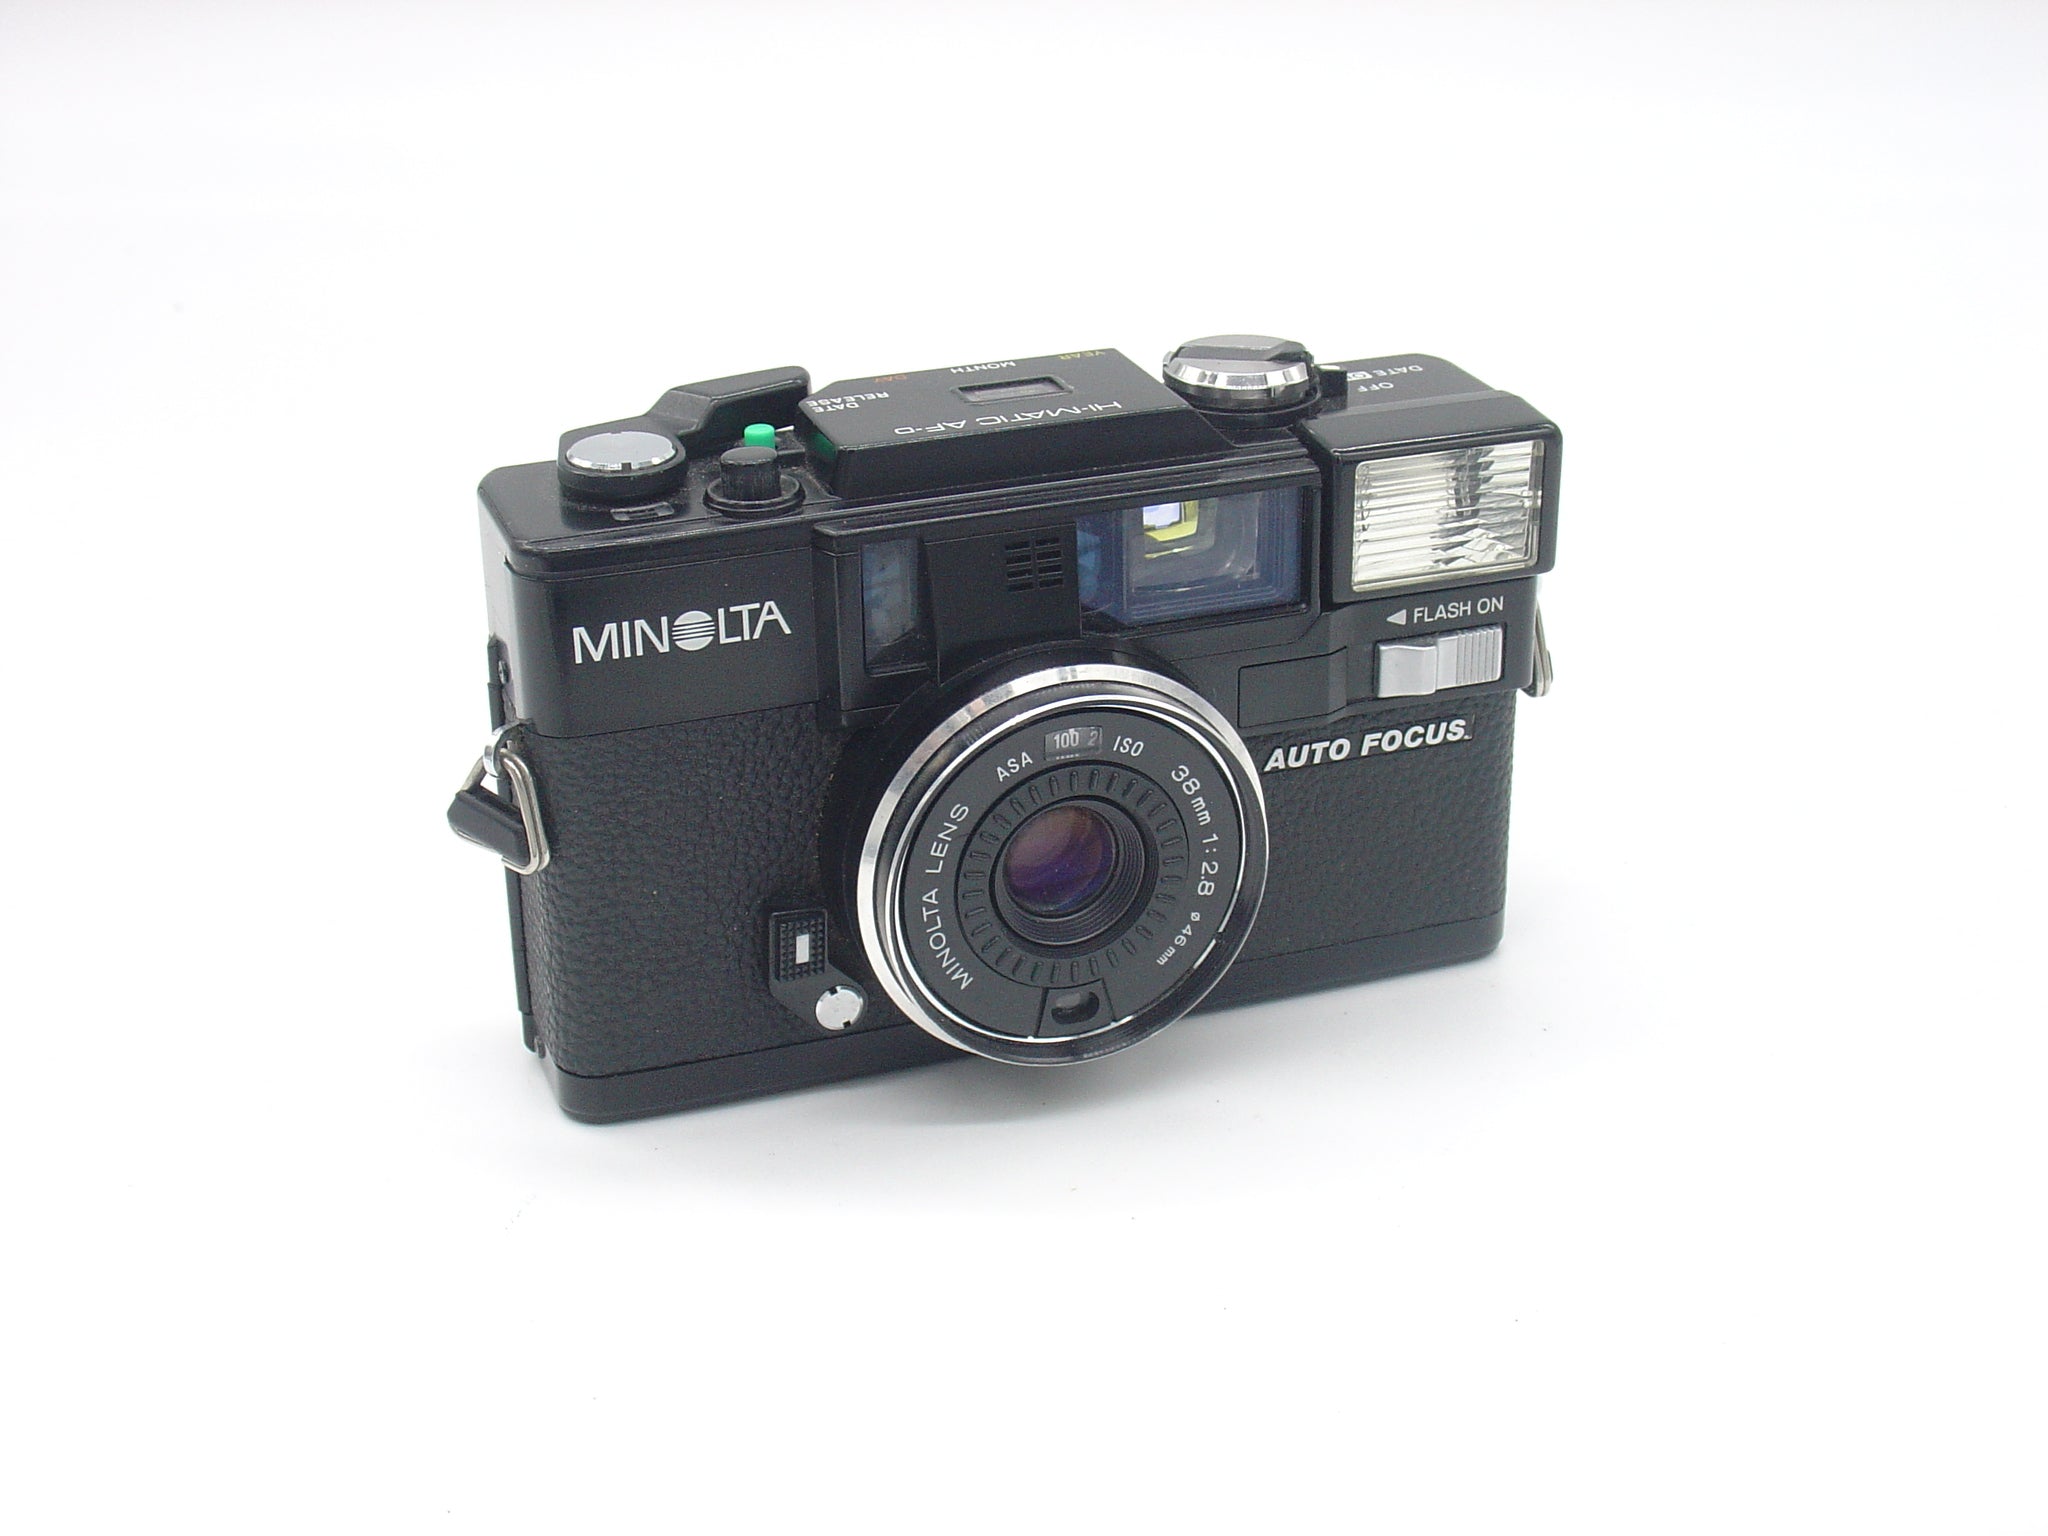 Minolta Hi-Matic AF Date retro point-and-shoot camera – Classic